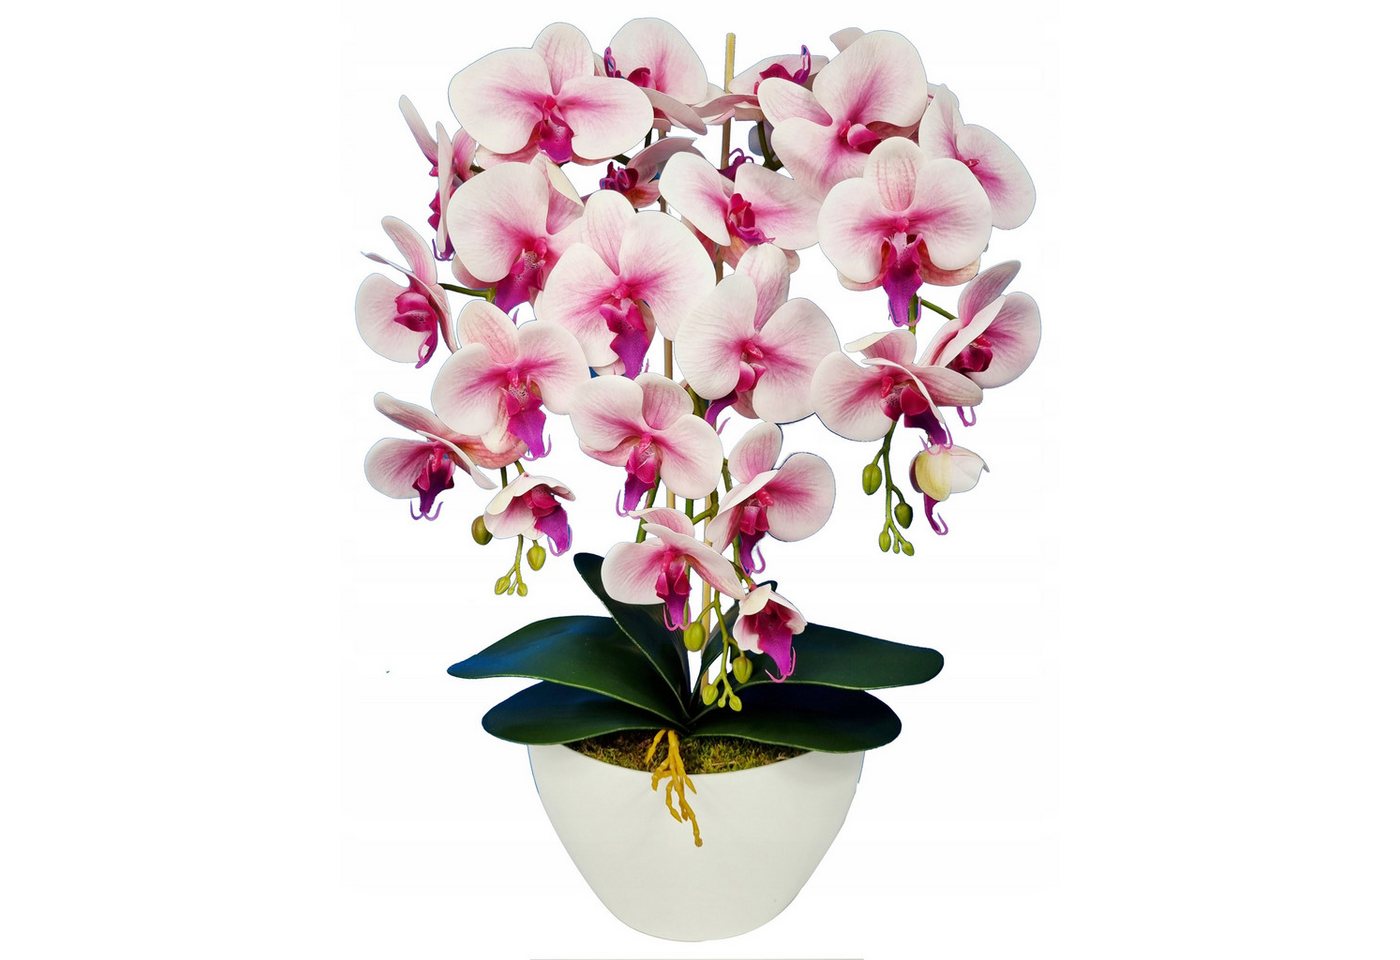 Kunstblume Künstliche Orchidee im Topf, weiße und rosa Orchidee 53 cm, Sarcia.eu von Sarcia.eu